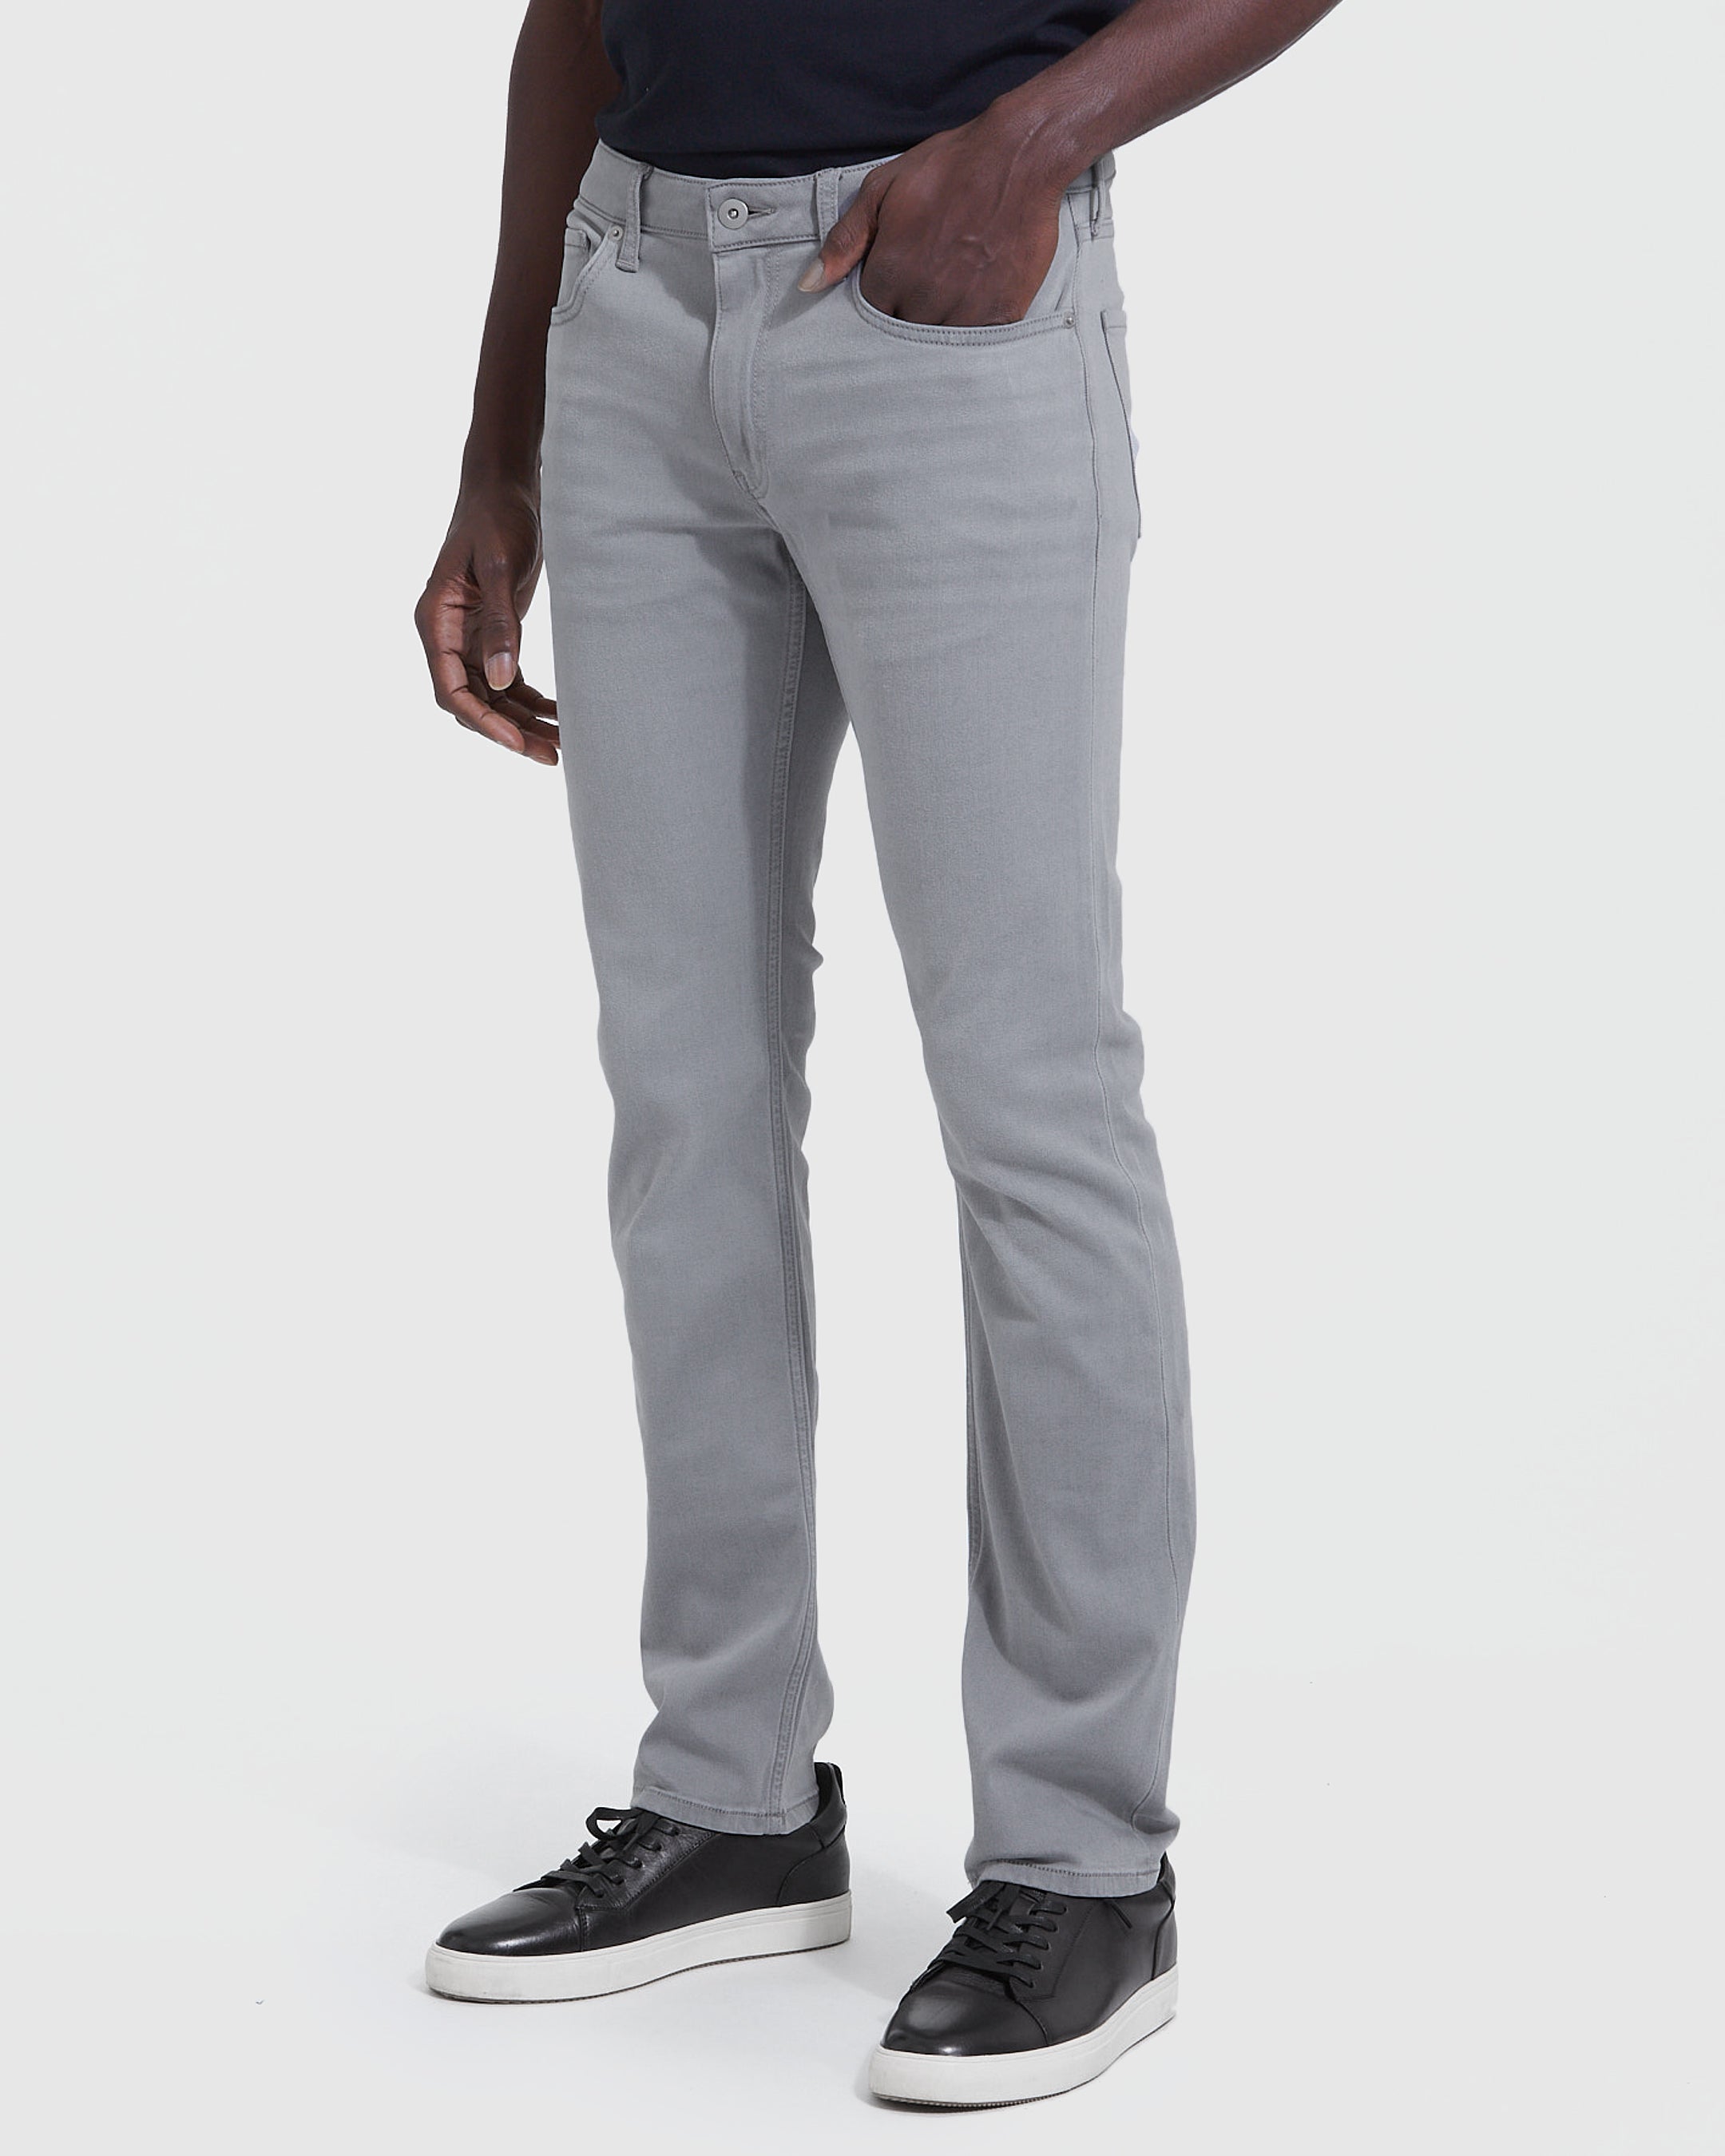 Classic Gray Slim True Jeans Wash Comfort Fit Medium –